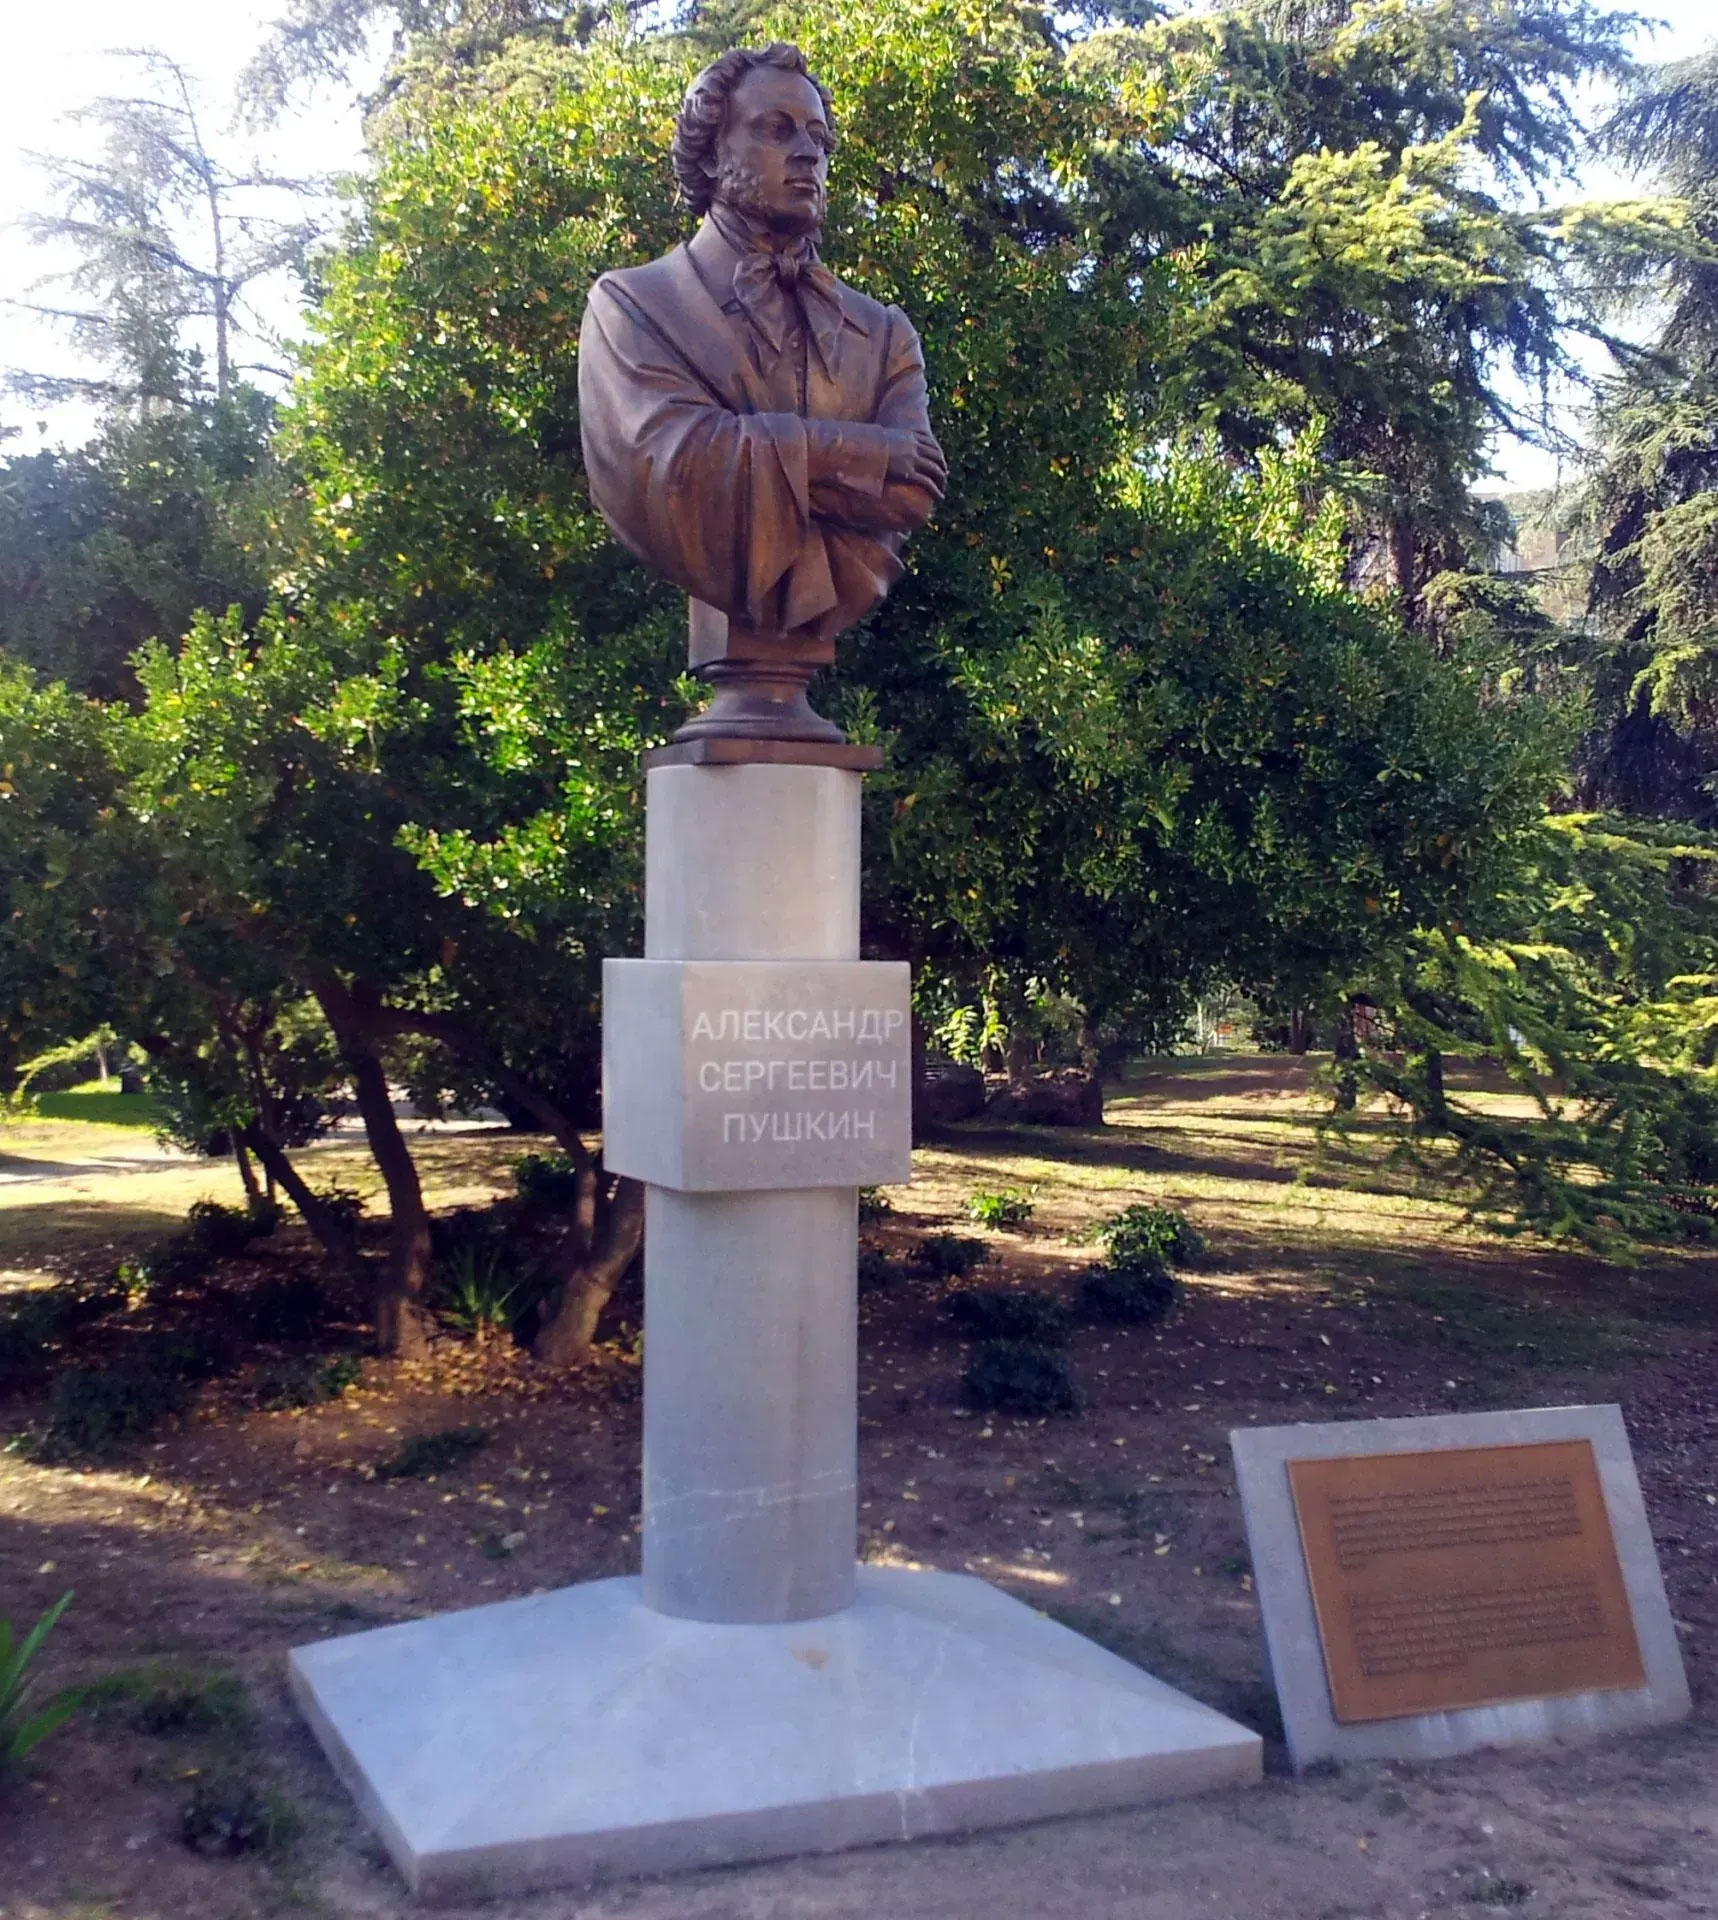 Busto de Alexander Pushkin en la Universidadde Granada